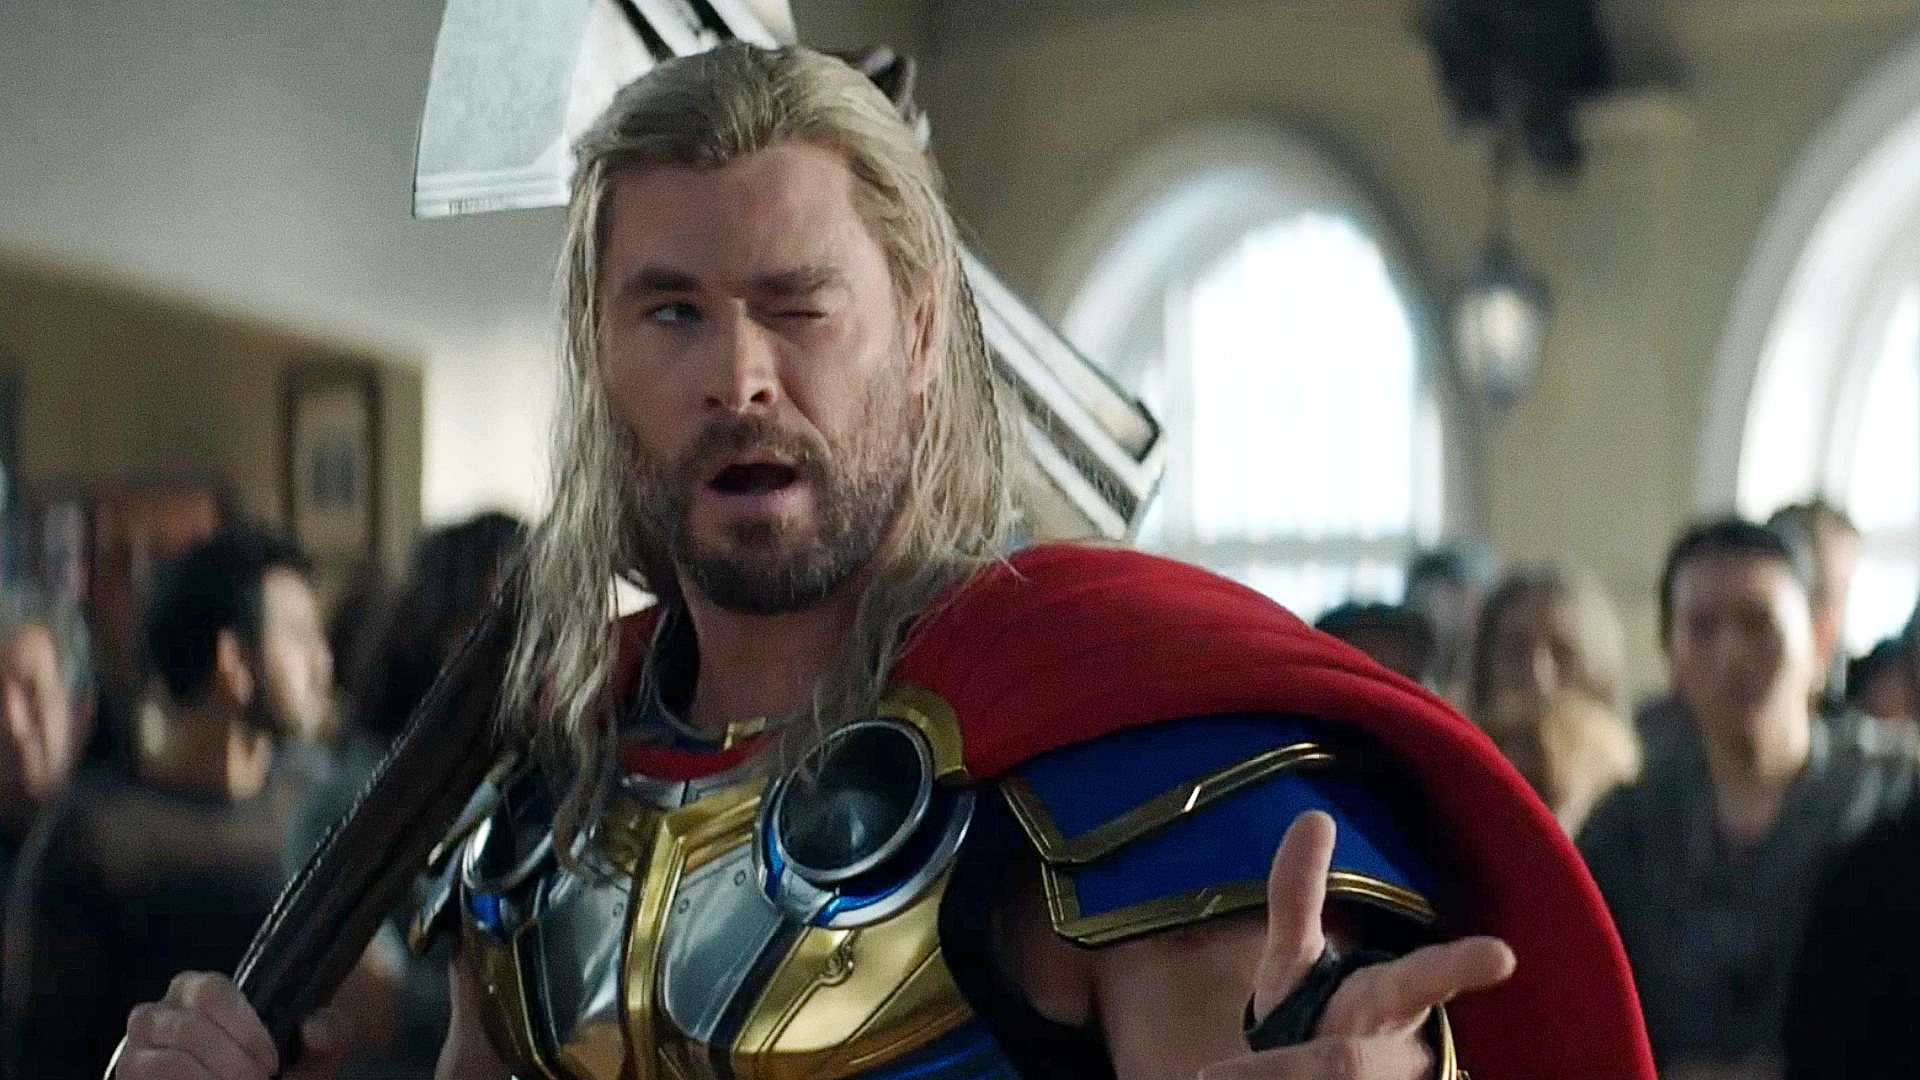 Marvel temeu ver Chris Hemsworth ferido em nova série da Disney+